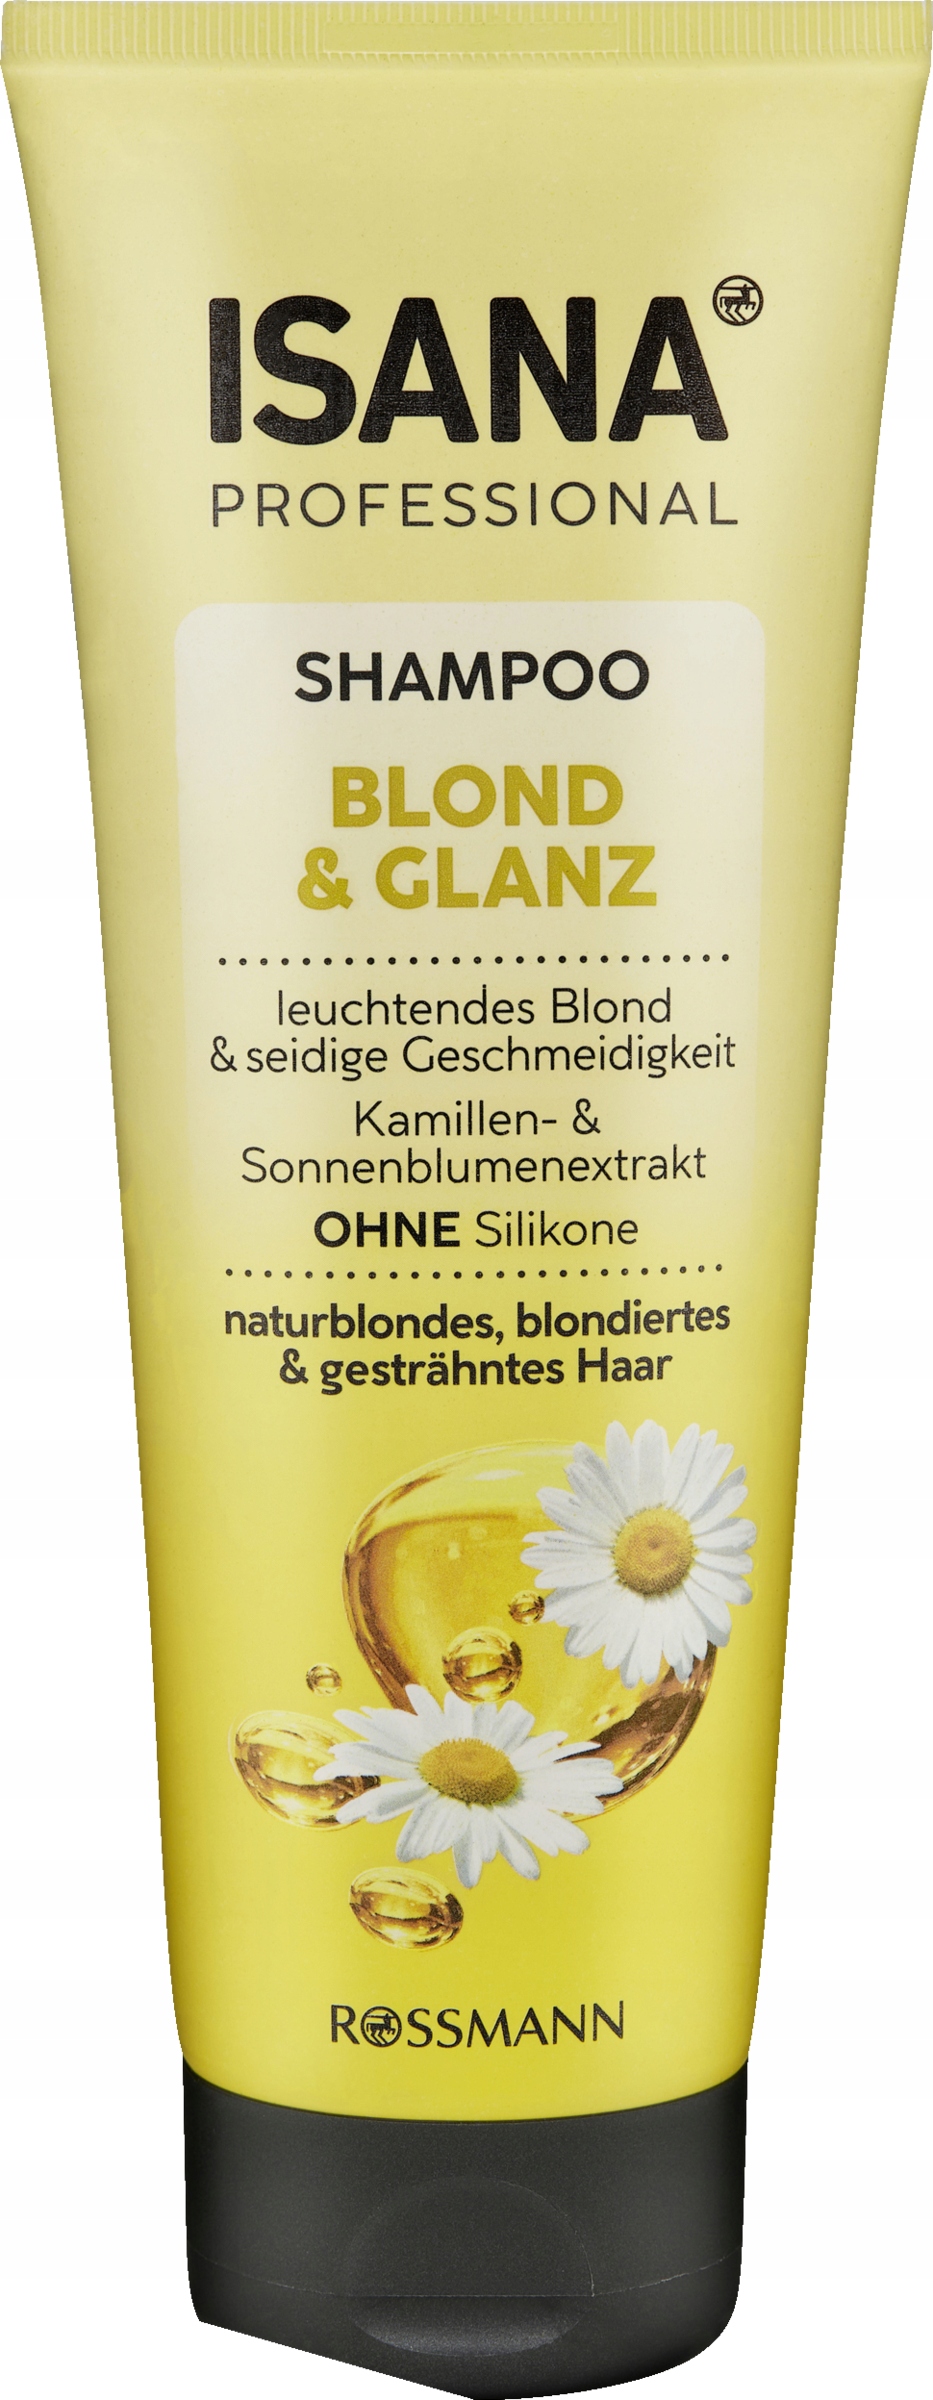 isana blond szampon opinie